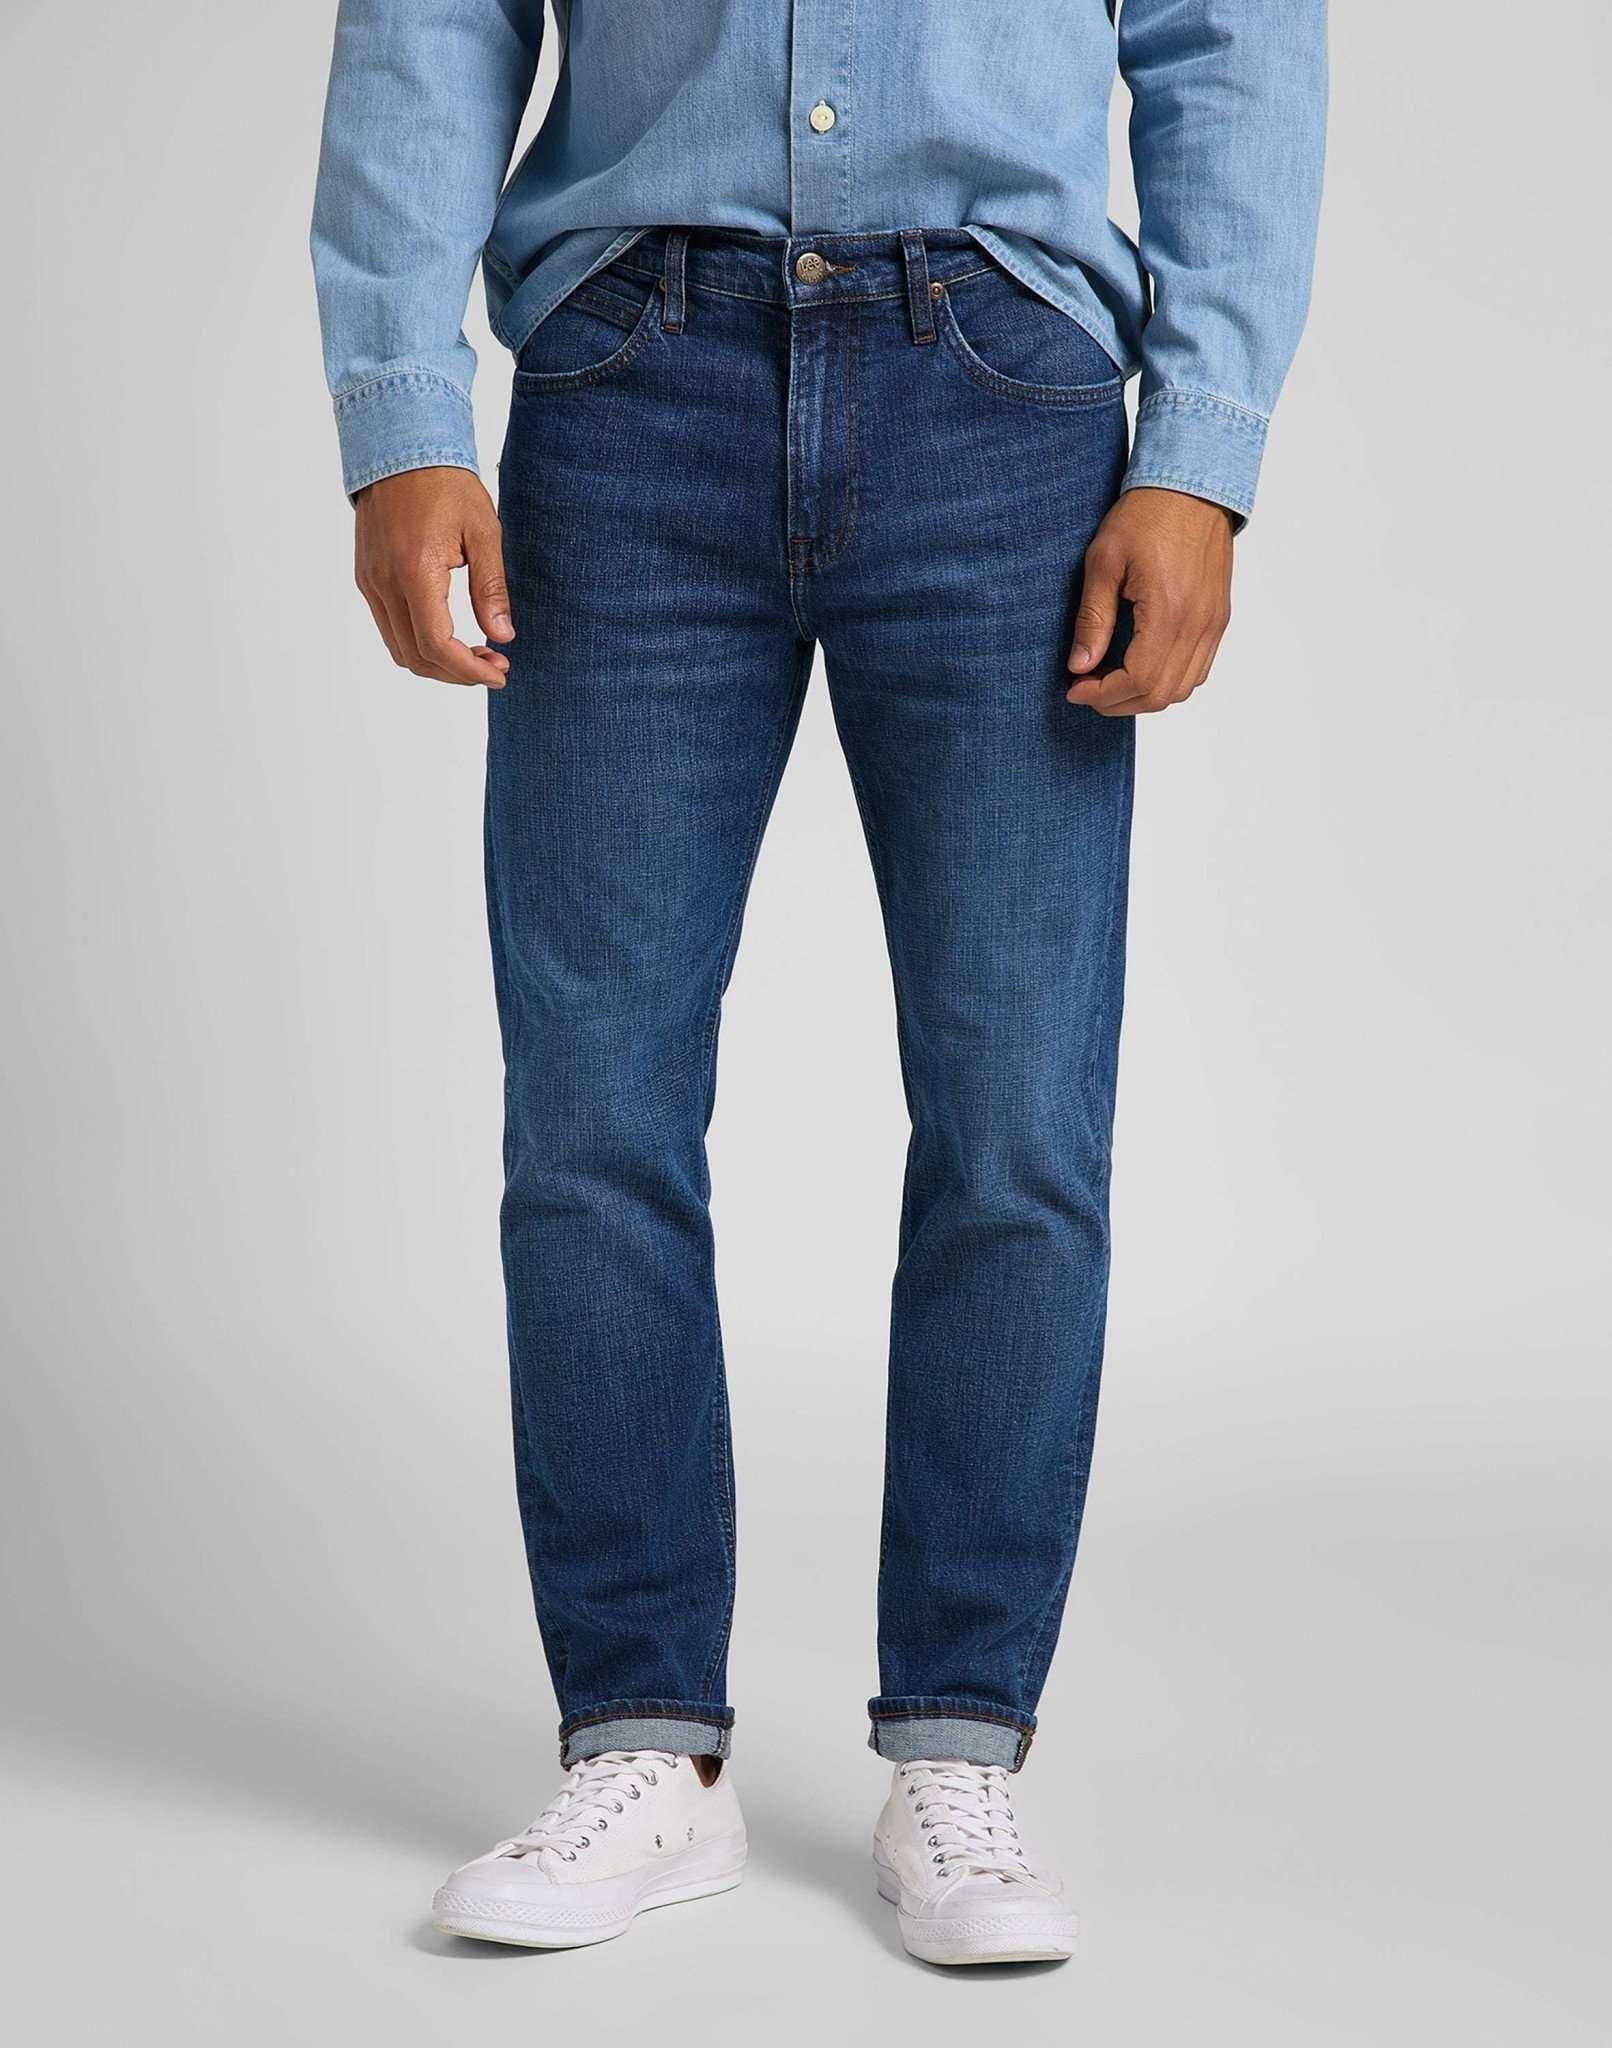 Jeans Straight Leg Austin Herren Blau Denim L32/W38 von Lee